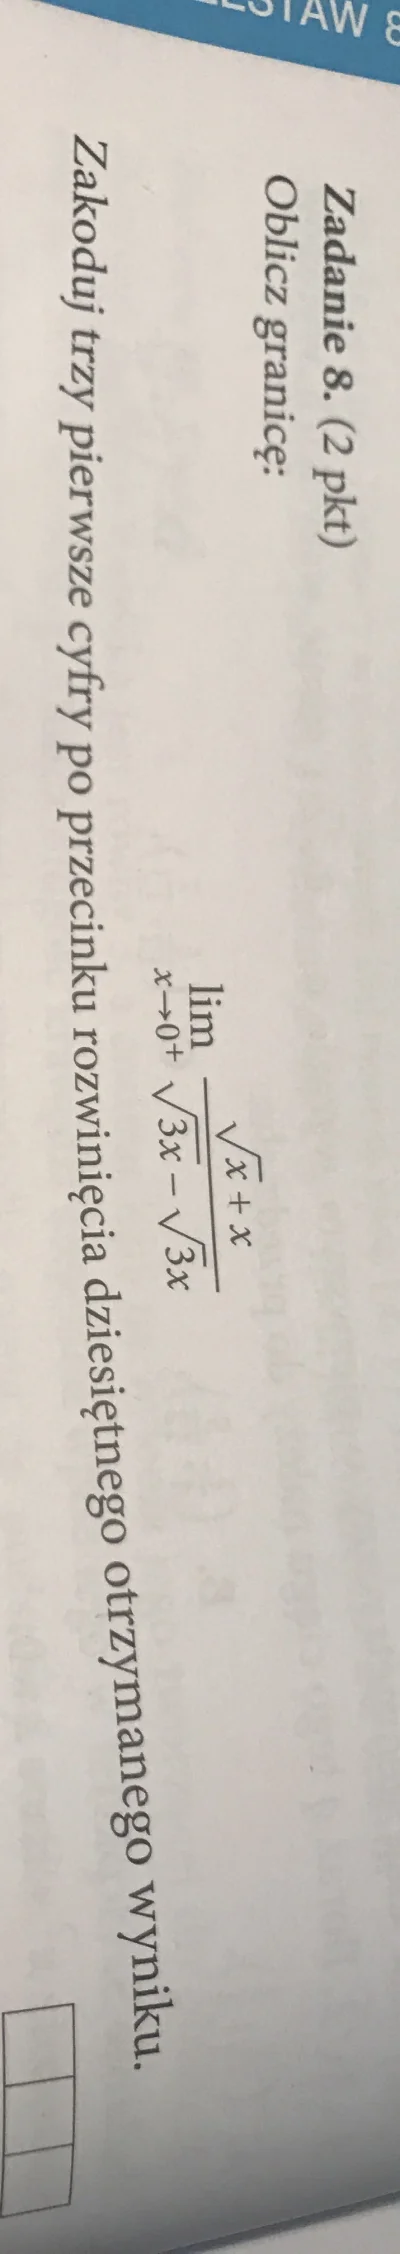 ThisIsBortas - Ktoś pomoże? #matematyka